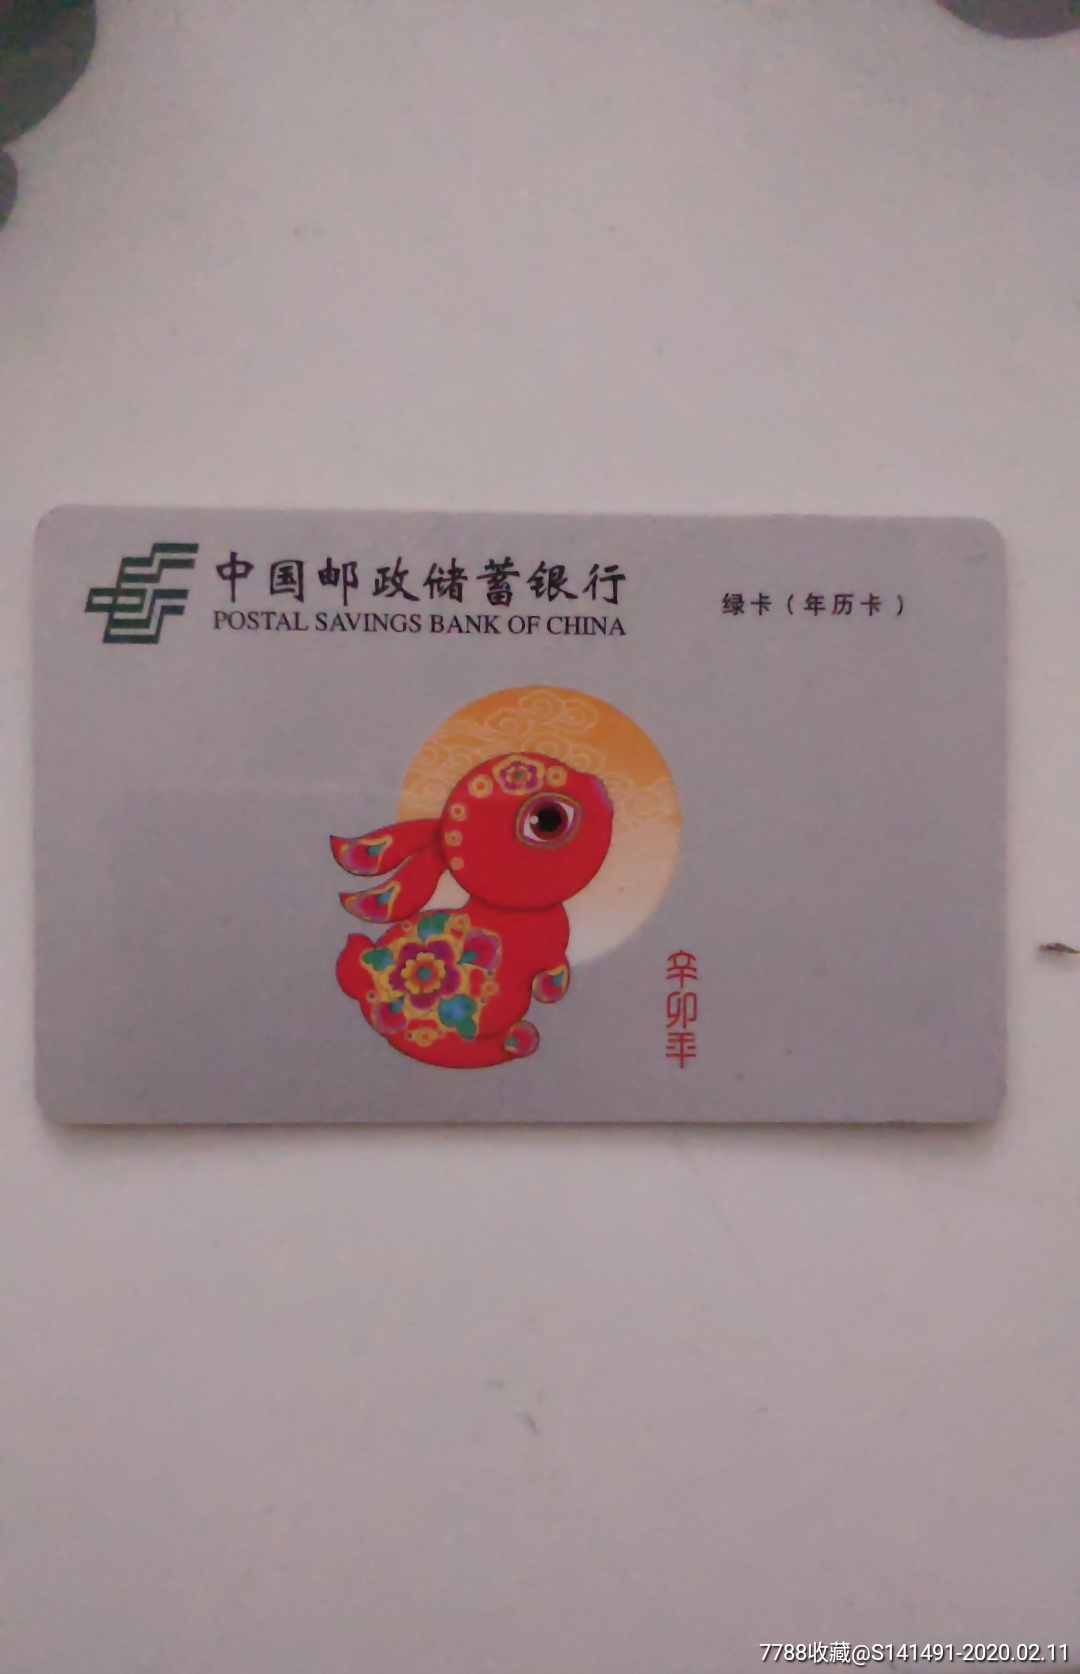 中国邮政储蓄银行绿卡(2011年历卡)